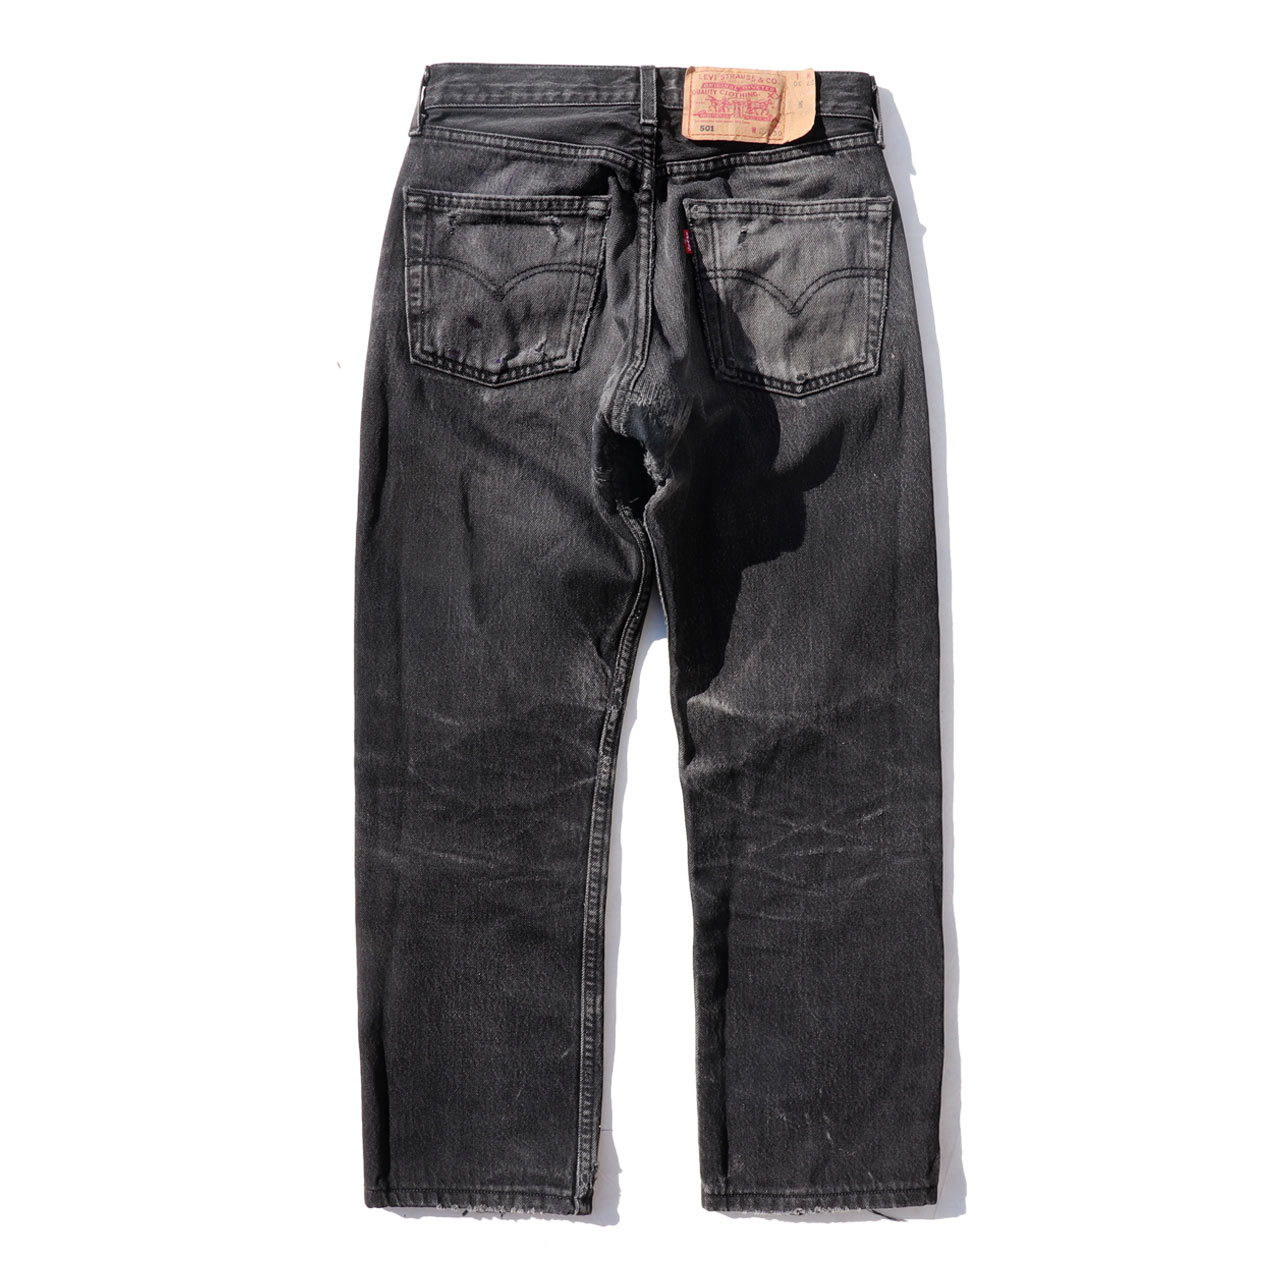 POST JUNK / 90âs LEVIâS 501 Faded Black Denim Pants Made In France [W27]